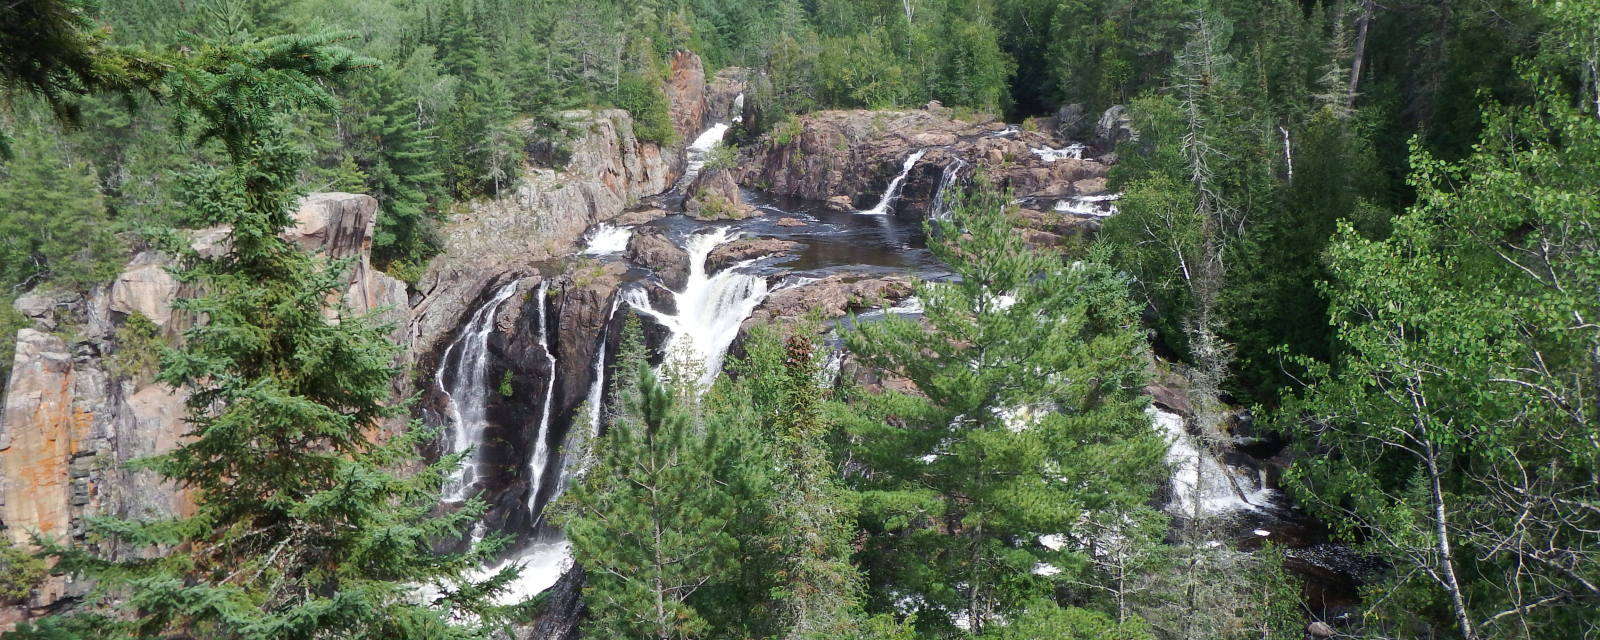 Aubrey Falls Provincial Park